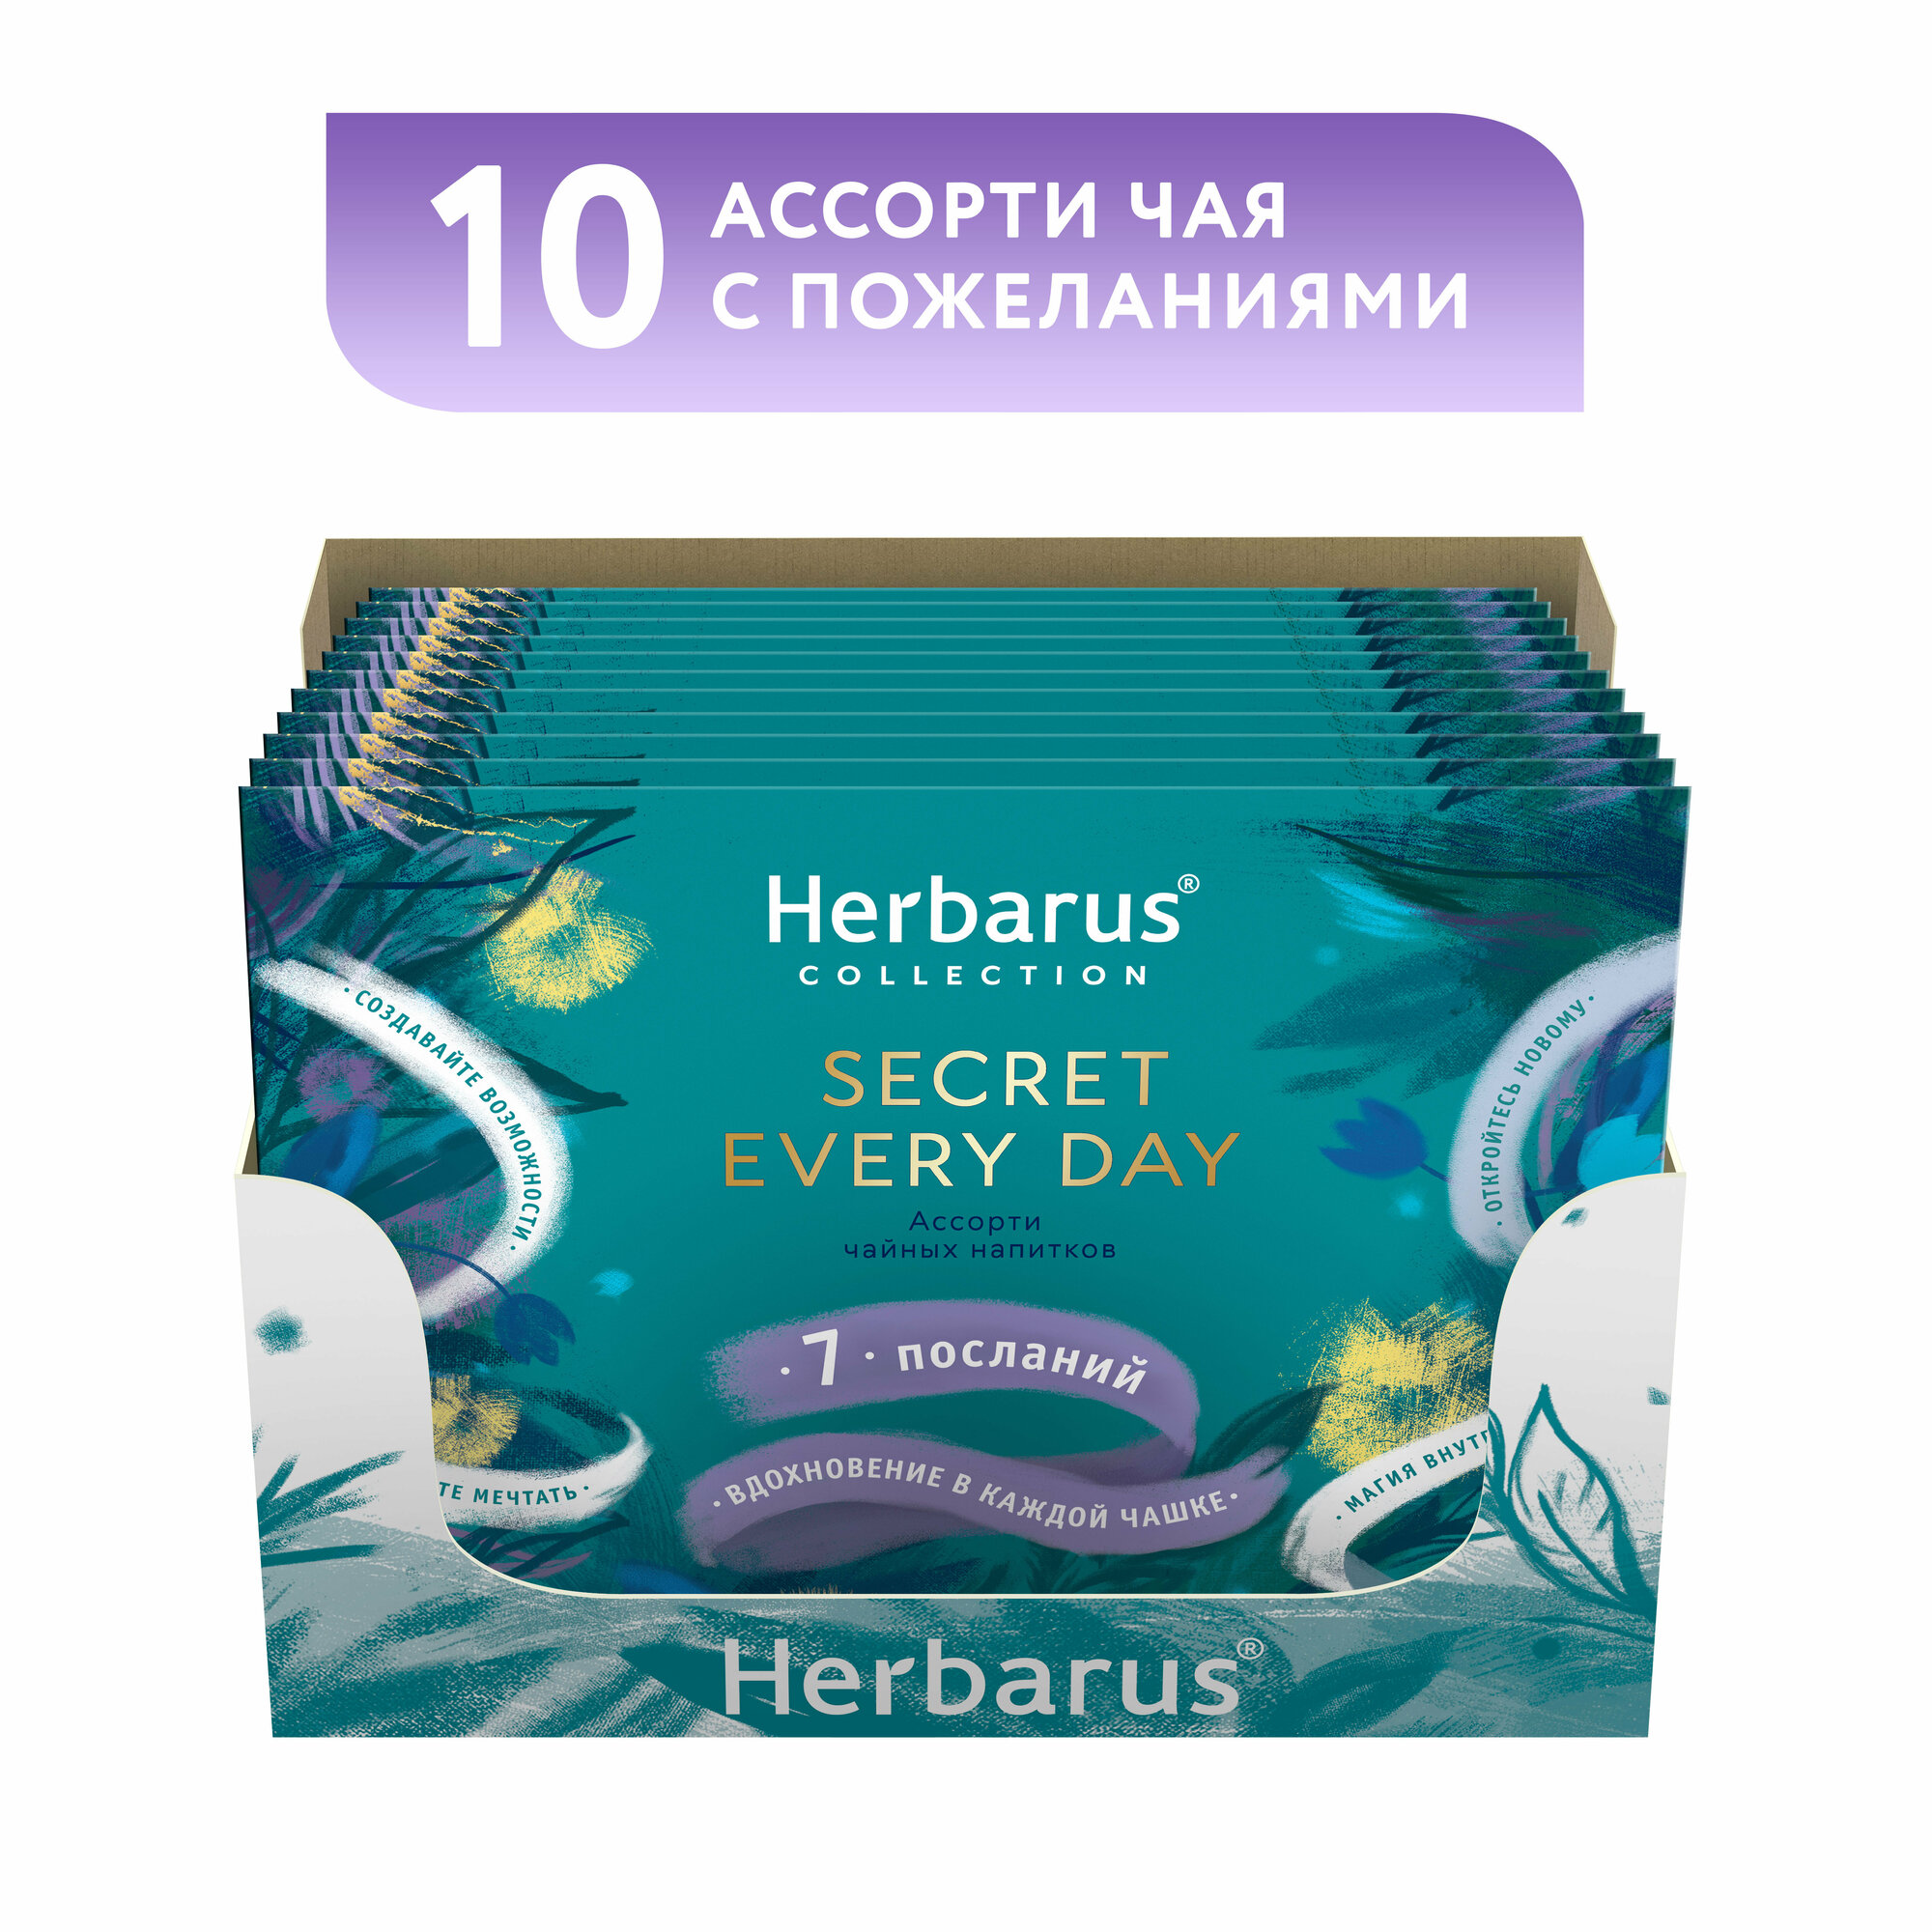 Чайное Ассорти Herbarus, 10 Подарочных конвертов с пожеланиями в коробке, 70 пакетиков